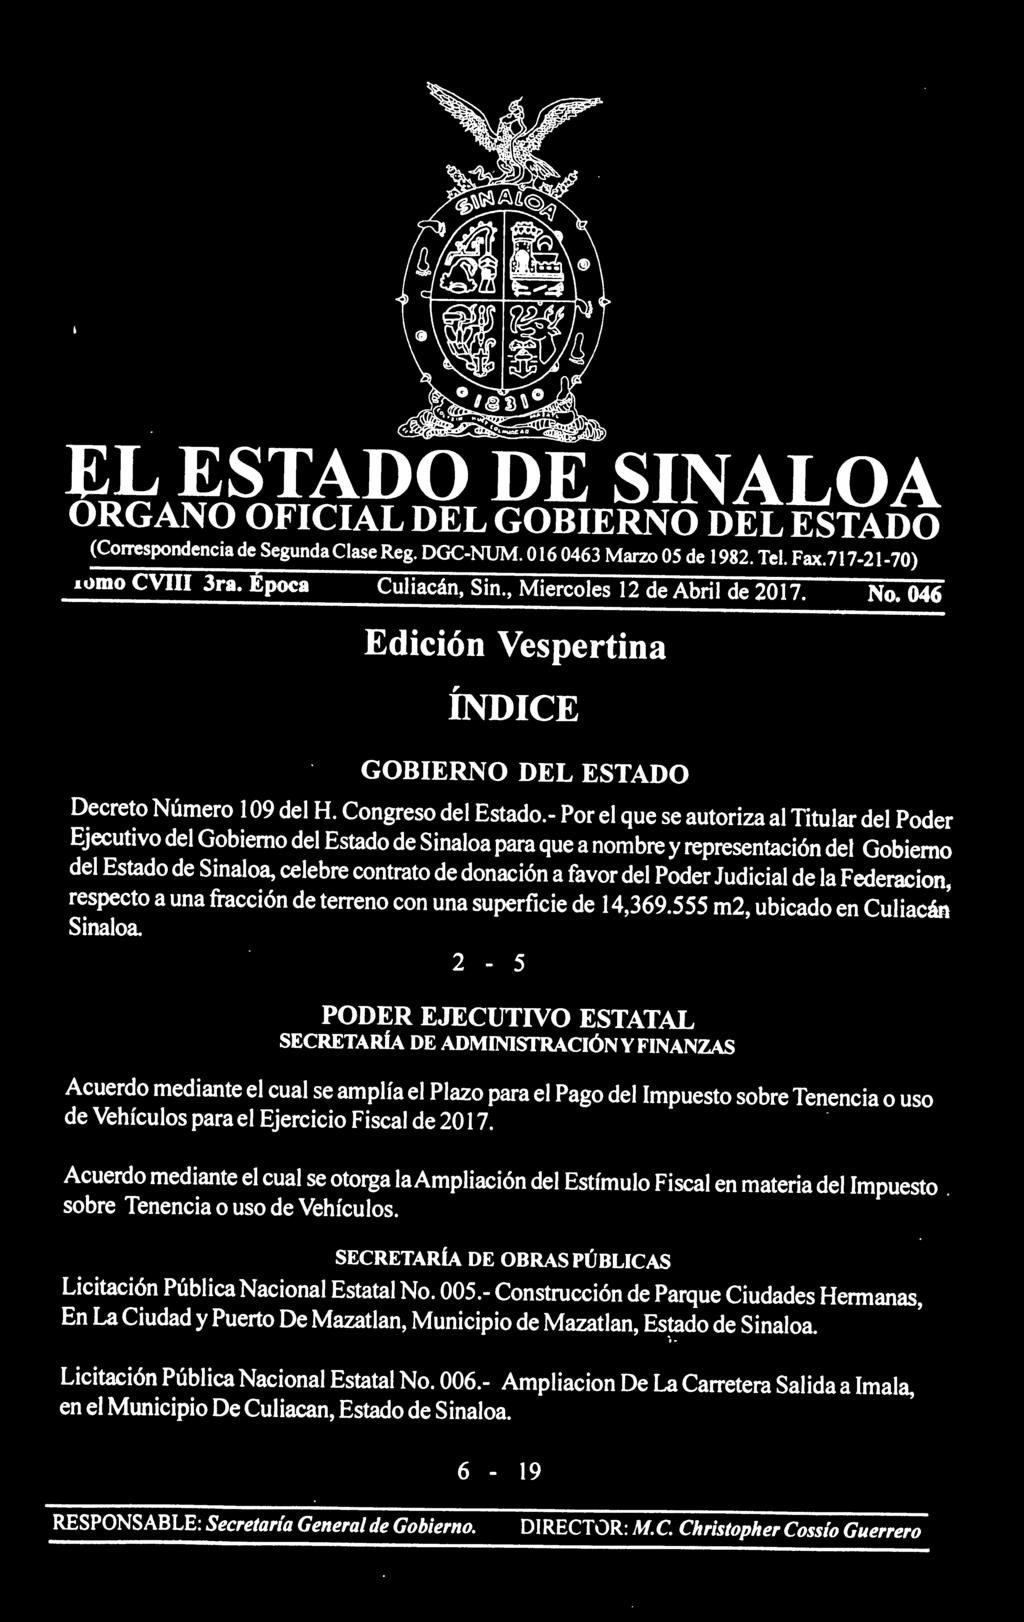 - Por el que se autoriza al Titular del Poder Ejecutivo del Gobierno del Estado de Sinaloa para que a nombre y representación del Gobierno del Estado de Sinaloa, celebre contrato de donación a favor